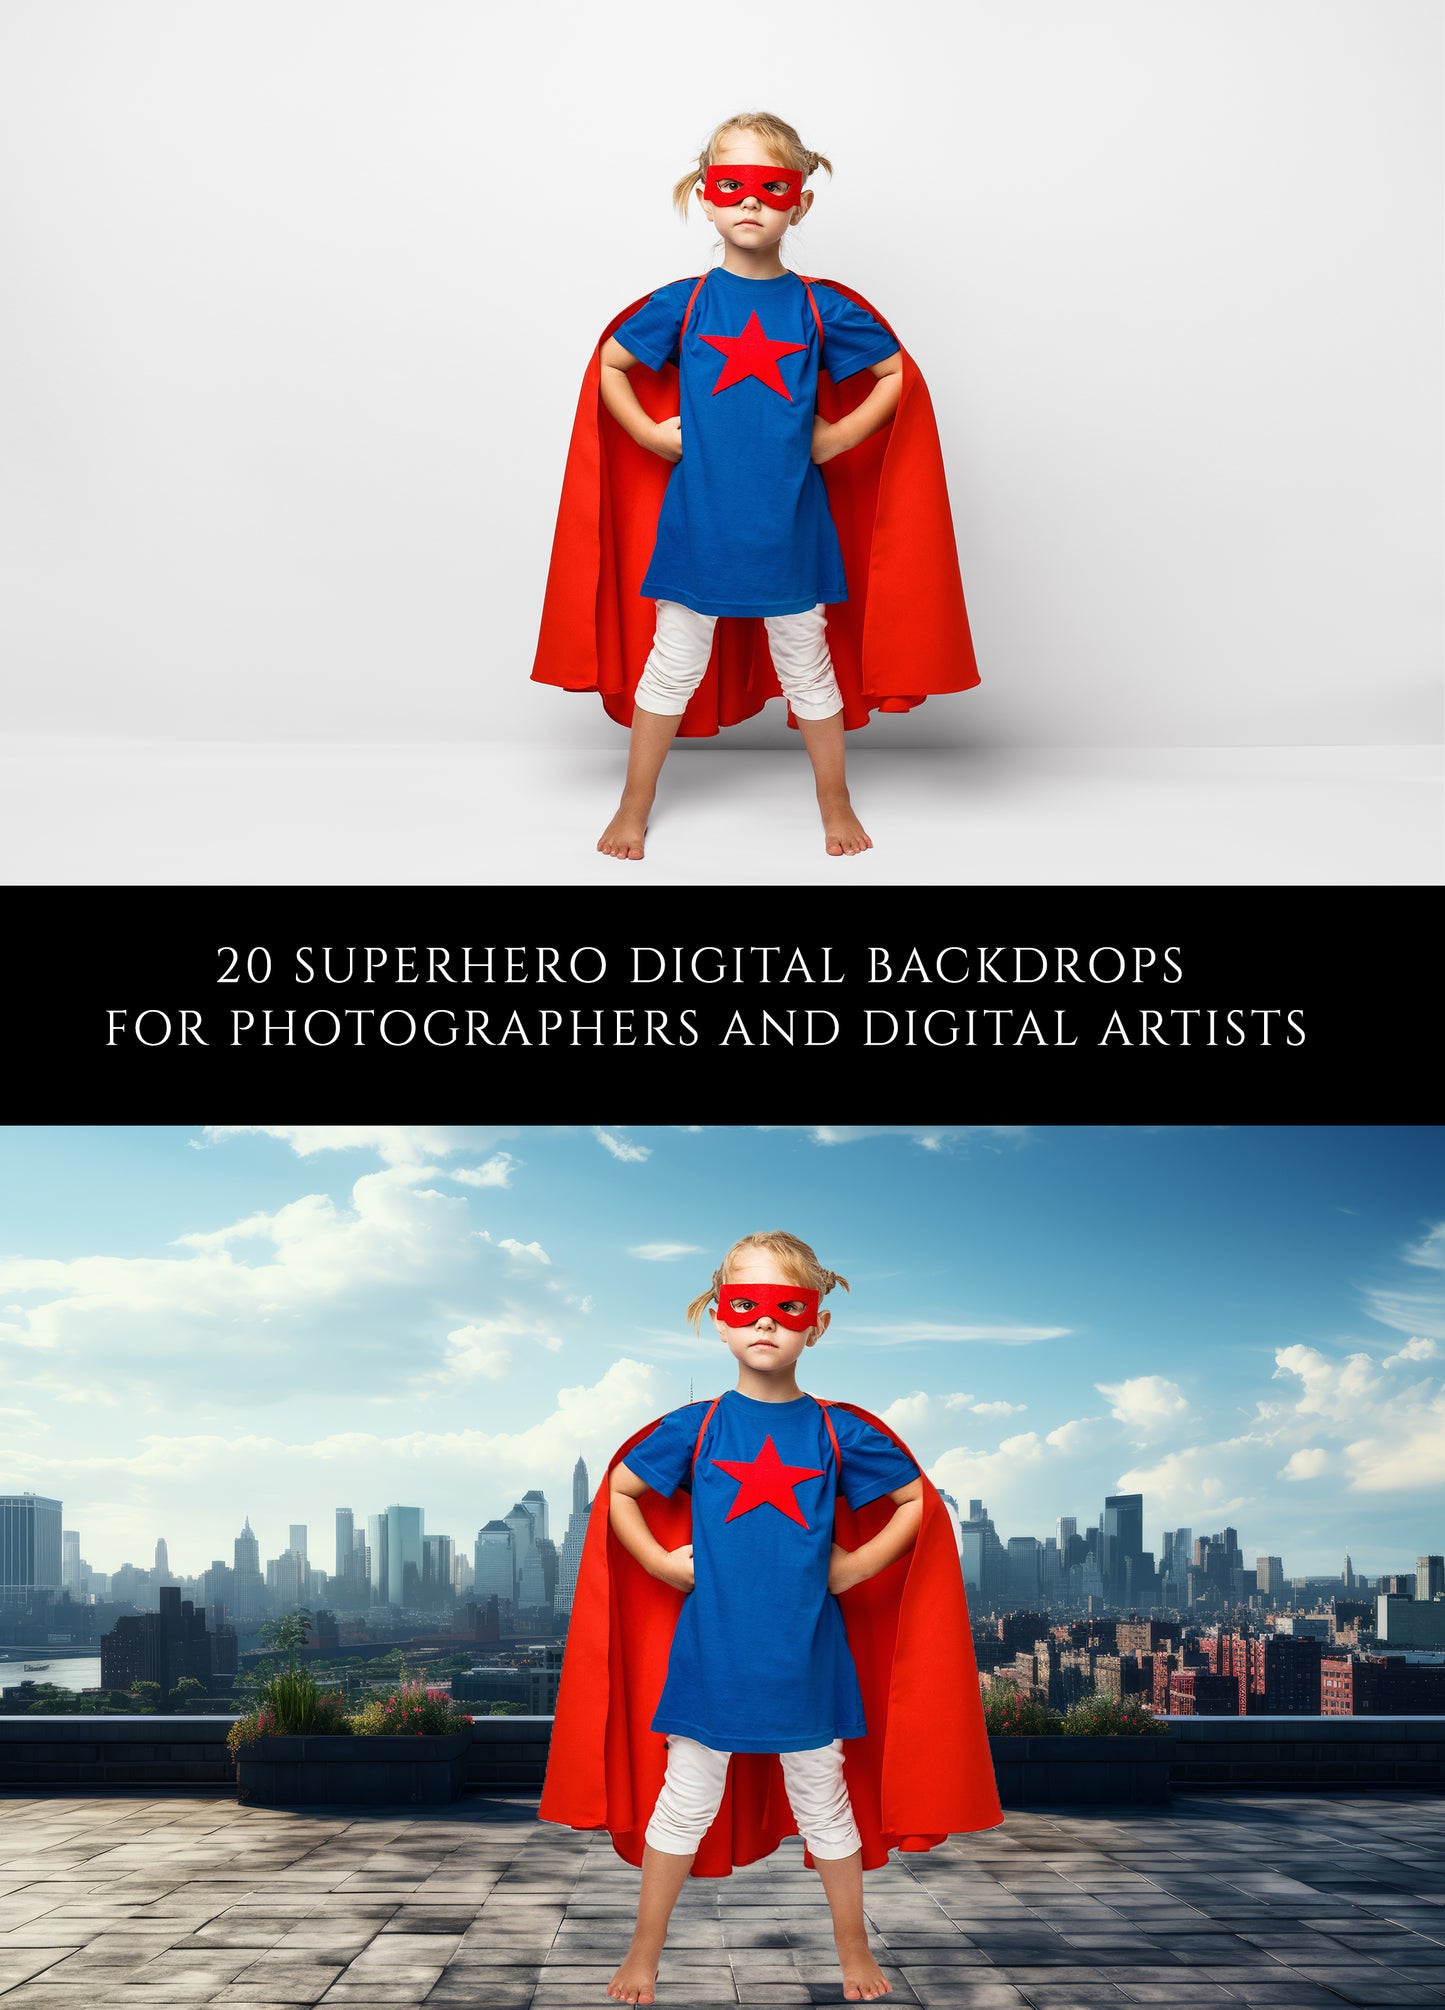 Superhero Digital Backdrops